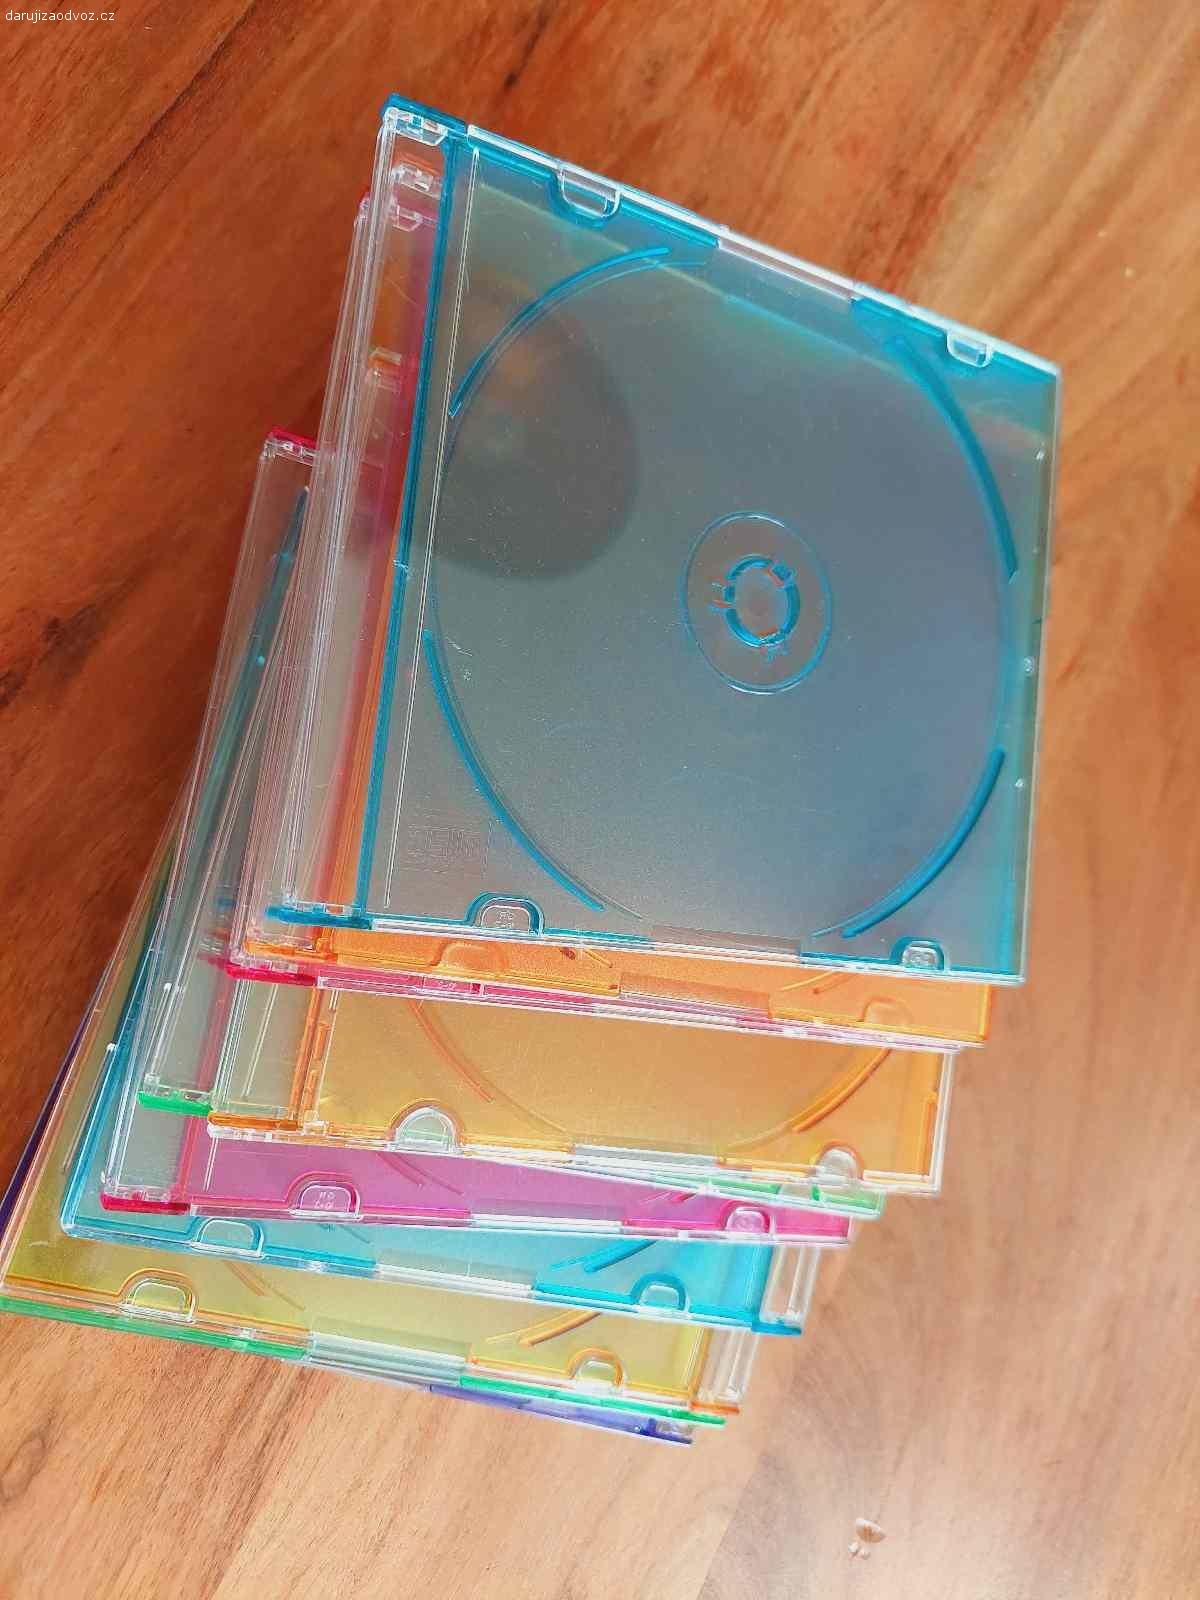 Obaly na CD a DVD. Daruji plastové obaly na CD a DVD, v perfektním stavu